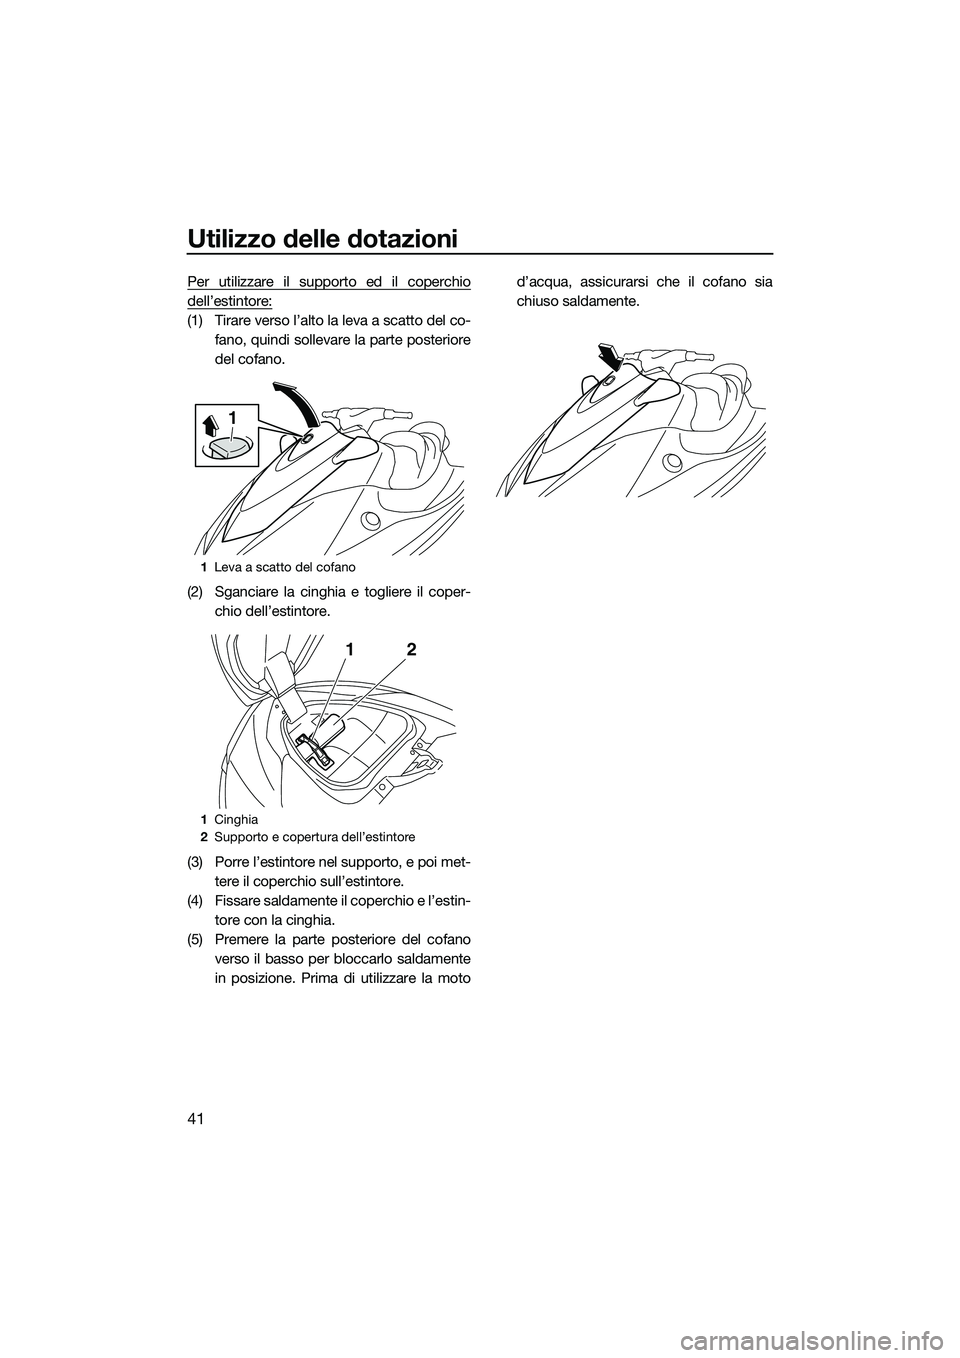 YAMAHA V1 2015  Manuale duso (in Italian) Utilizzo delle dotazioni
41
Per utilizzare il supporto ed il coperchio
dell’estintore:
(1) Tirare verso l’alto la leva a scatto del co-fano, quindi sollevare la parte posteriore
del cofano.
(2) Sg